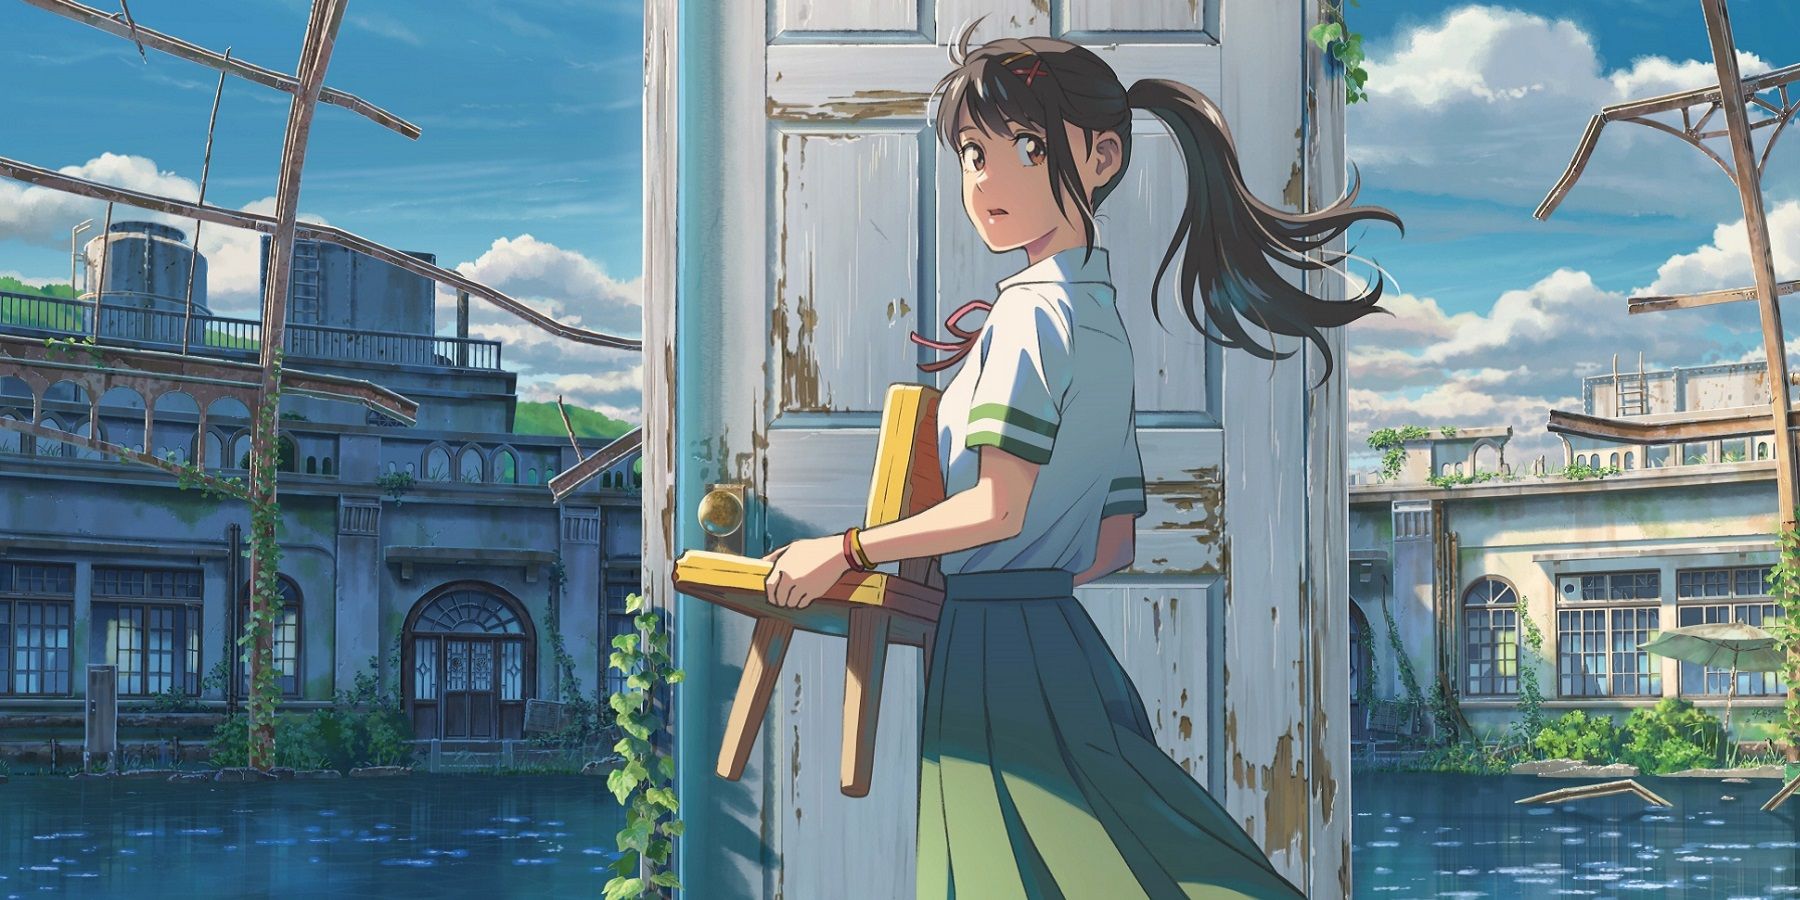 10 Best Anime For Fans Of Revolutionary Girl Utena